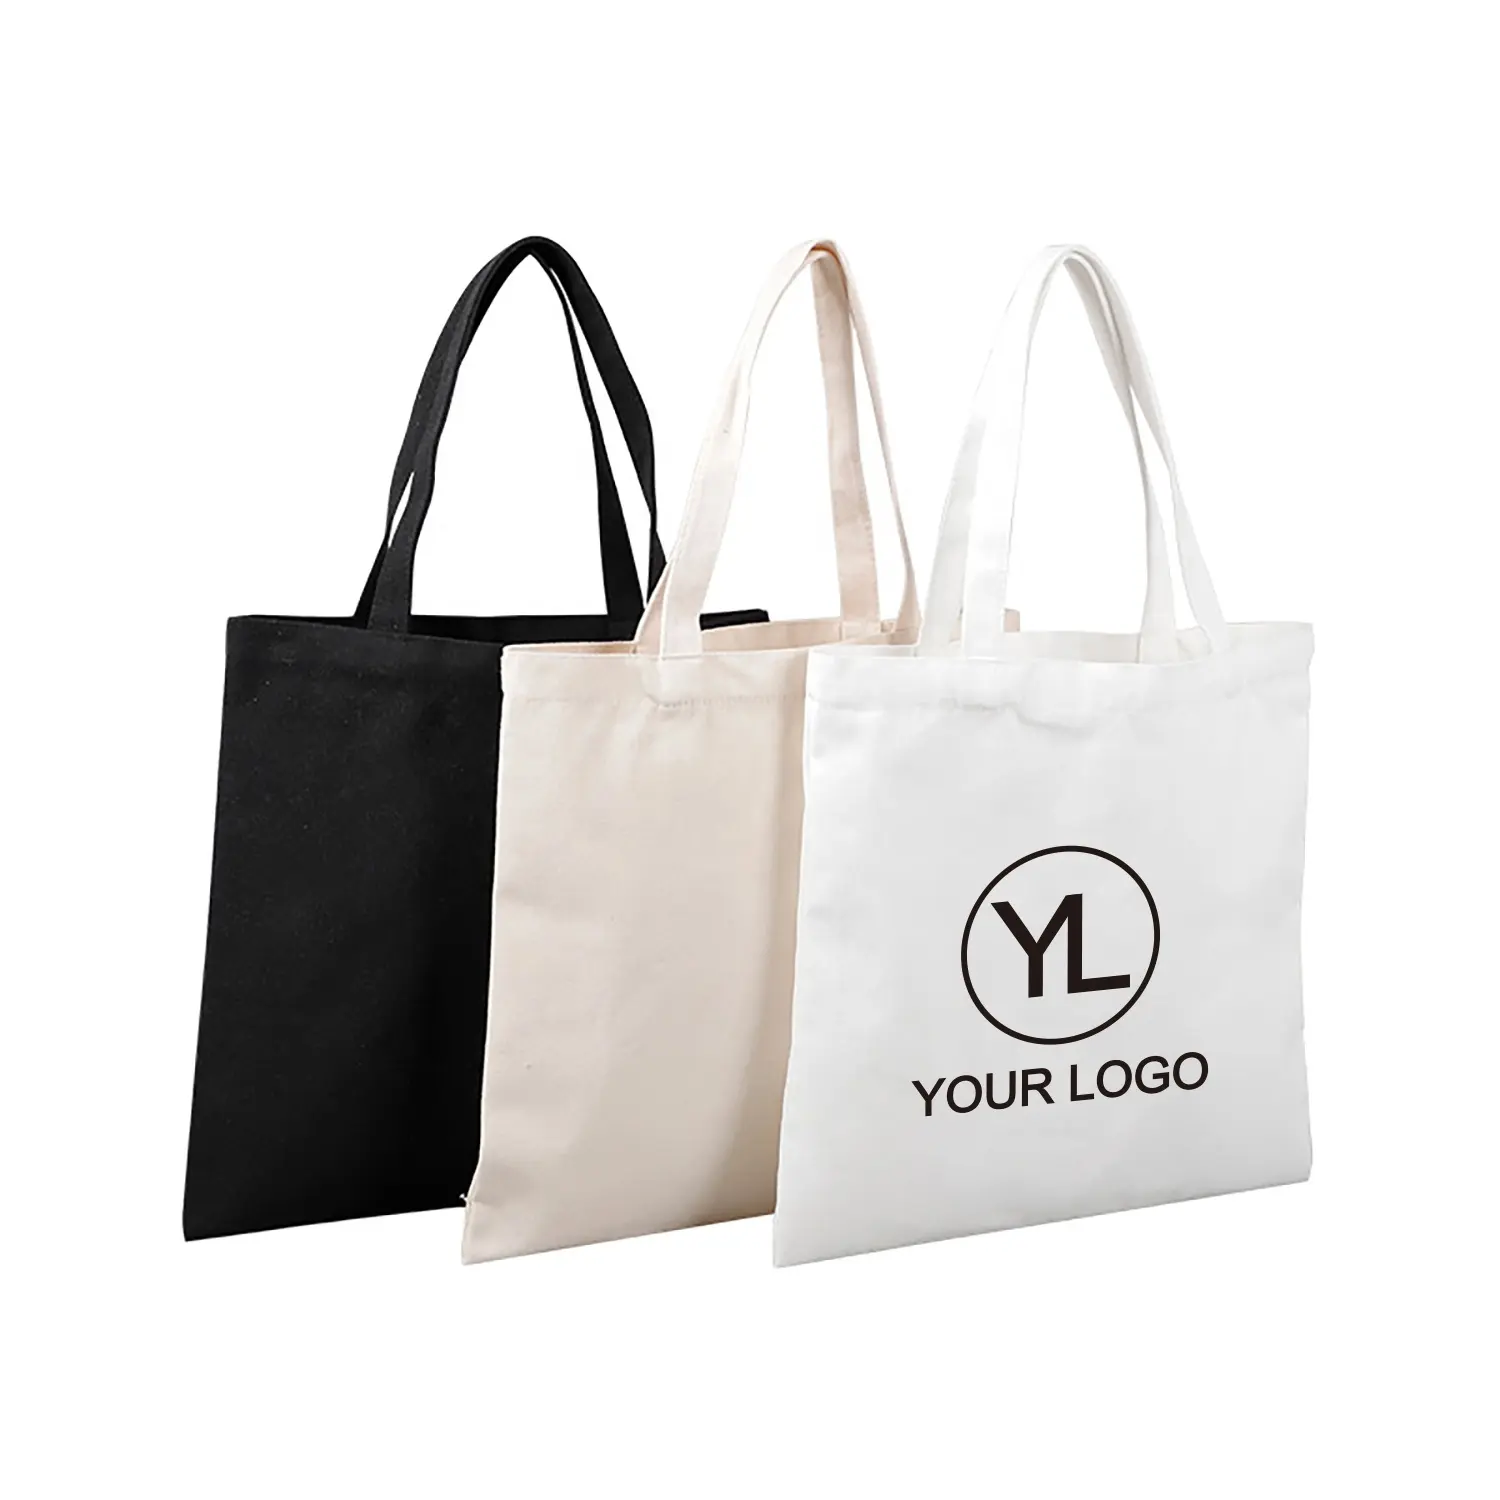 Logotipo personalizado impresso DIY Eco amigável designer reutilizável algodão pano lona sacola de compras